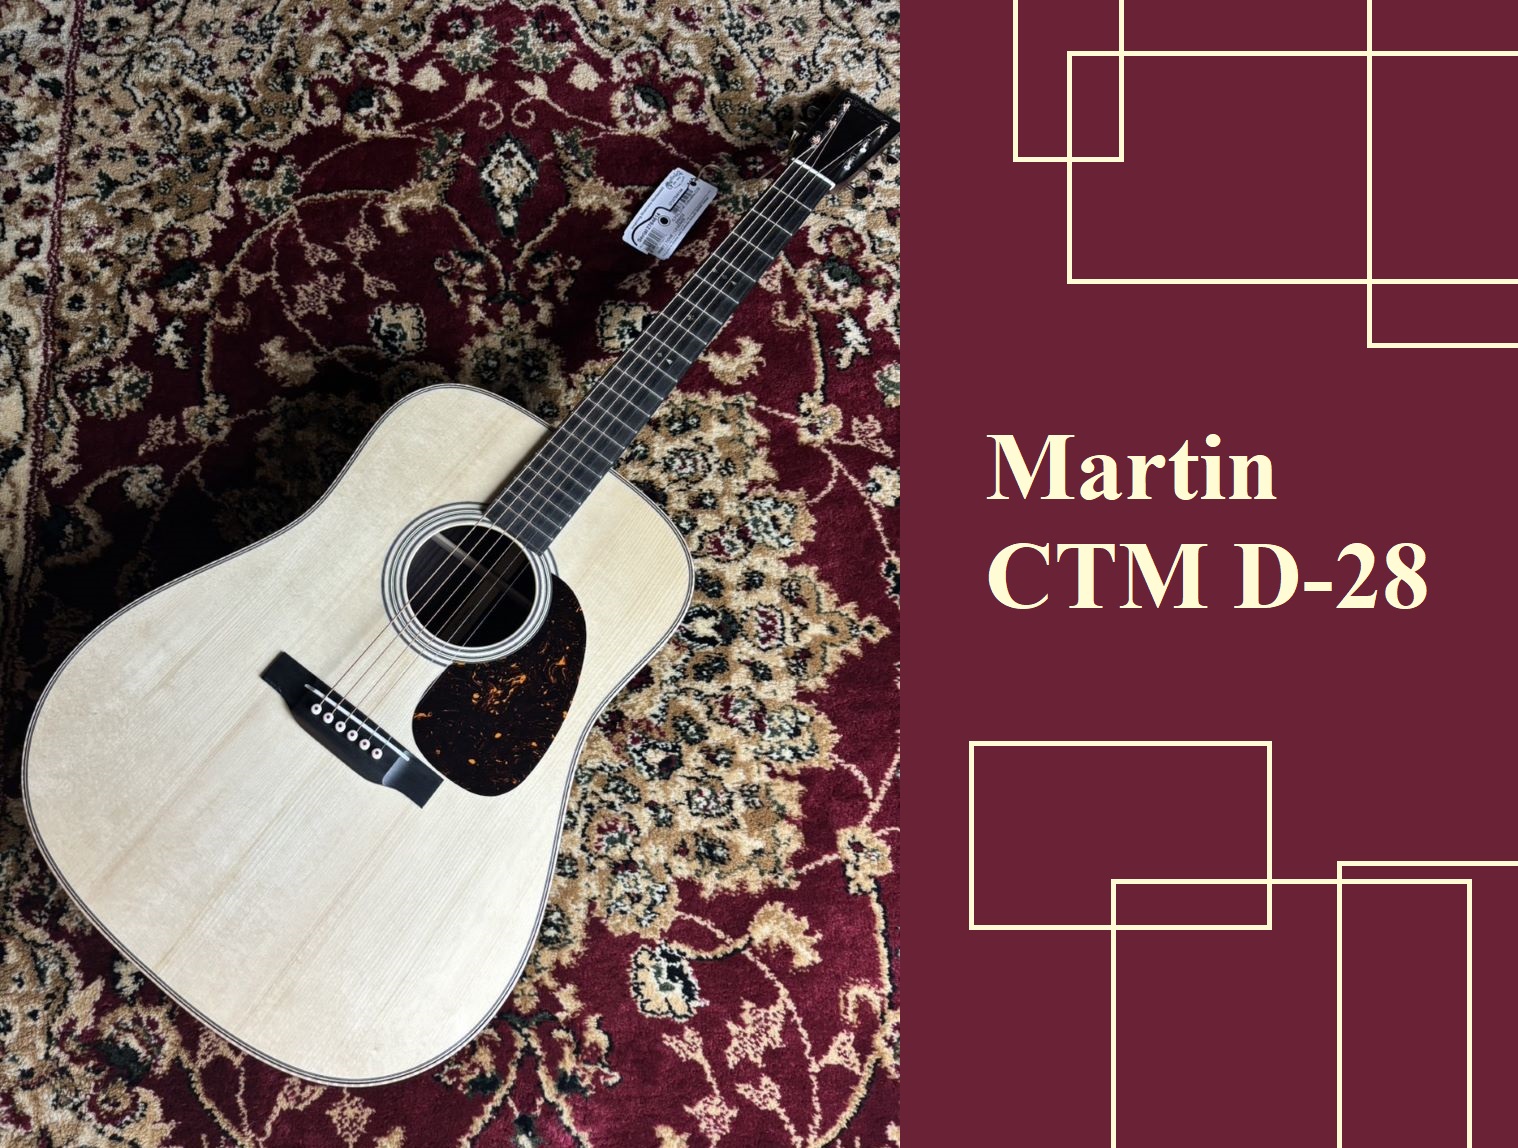 島村楽器大分店に、Martin(マーチン)のアコースティックギター、『CTM D-28』が入荷致しました！ Martinカスタムプロモオーダーモデルとなる一本。カスタムショップは膨大な敷地のマーティンファクトリーのほんの一画にて担われており、凄腕の少数スペシャル集団によって構成されています。 一つ一 […]